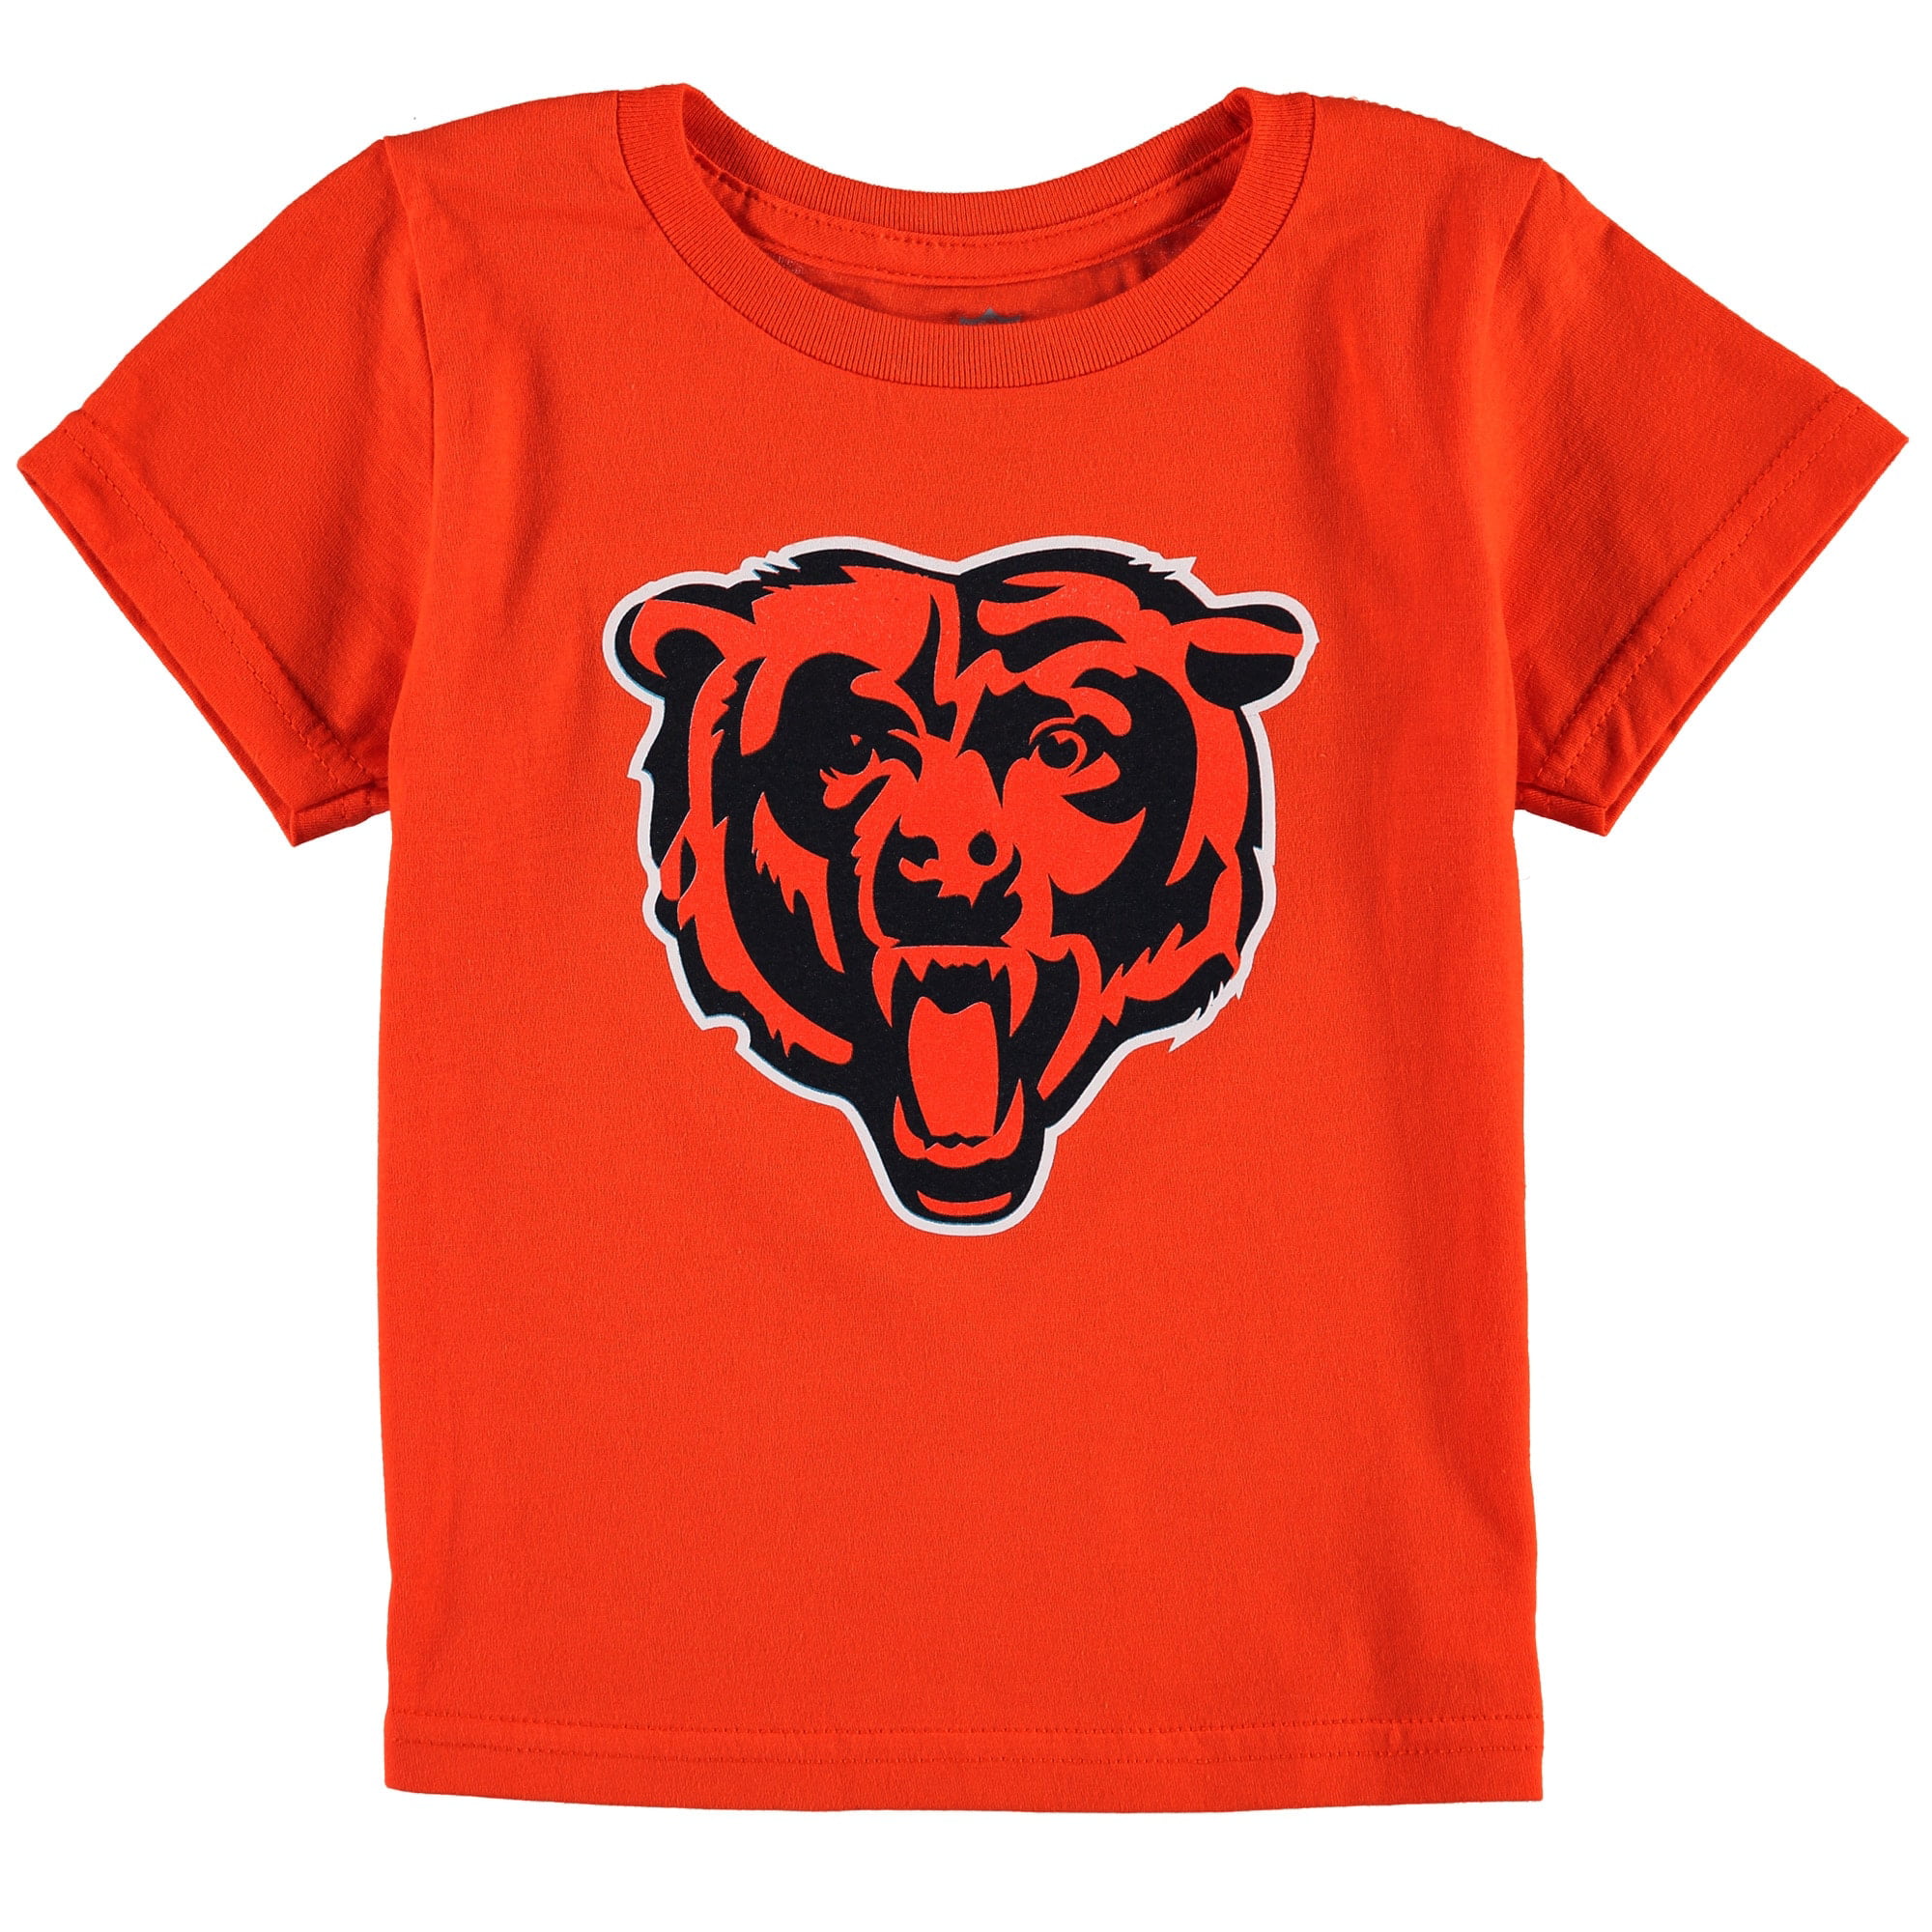 kids chicago bears shirt